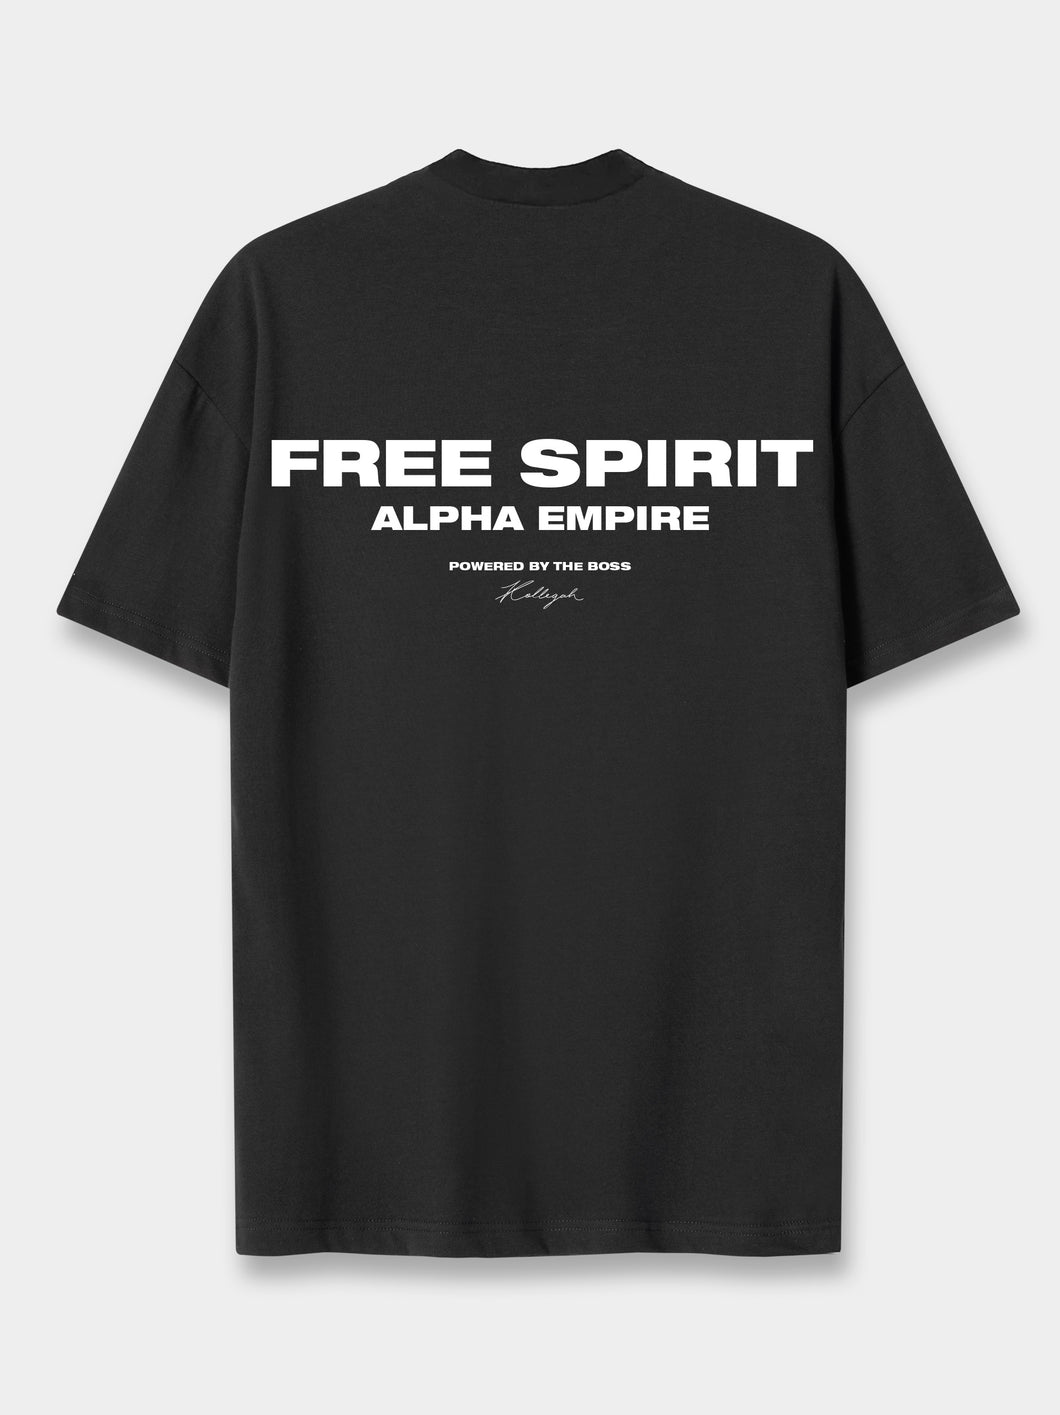 Free Spirit Tour T-Shirt